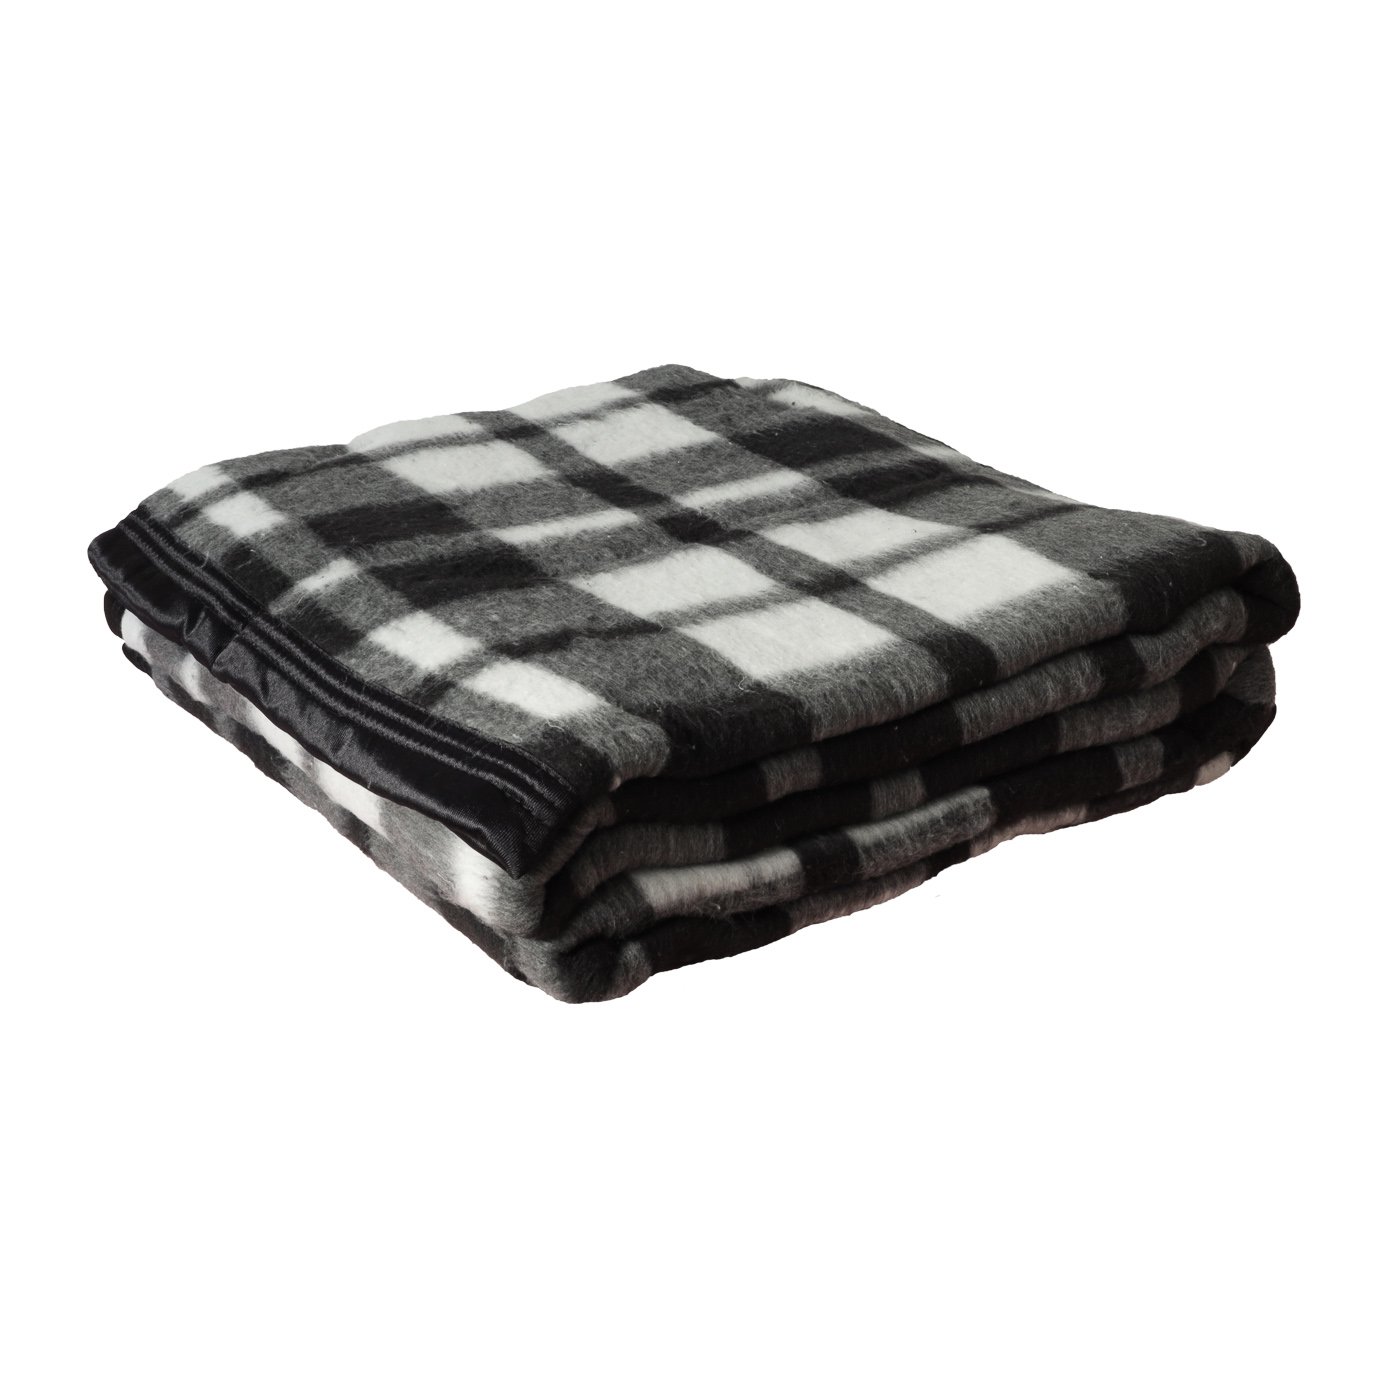 Cobertor Casal Boa Noite Xadrez 1,80 x 2,20 Mt Guaratingueta cor: preto